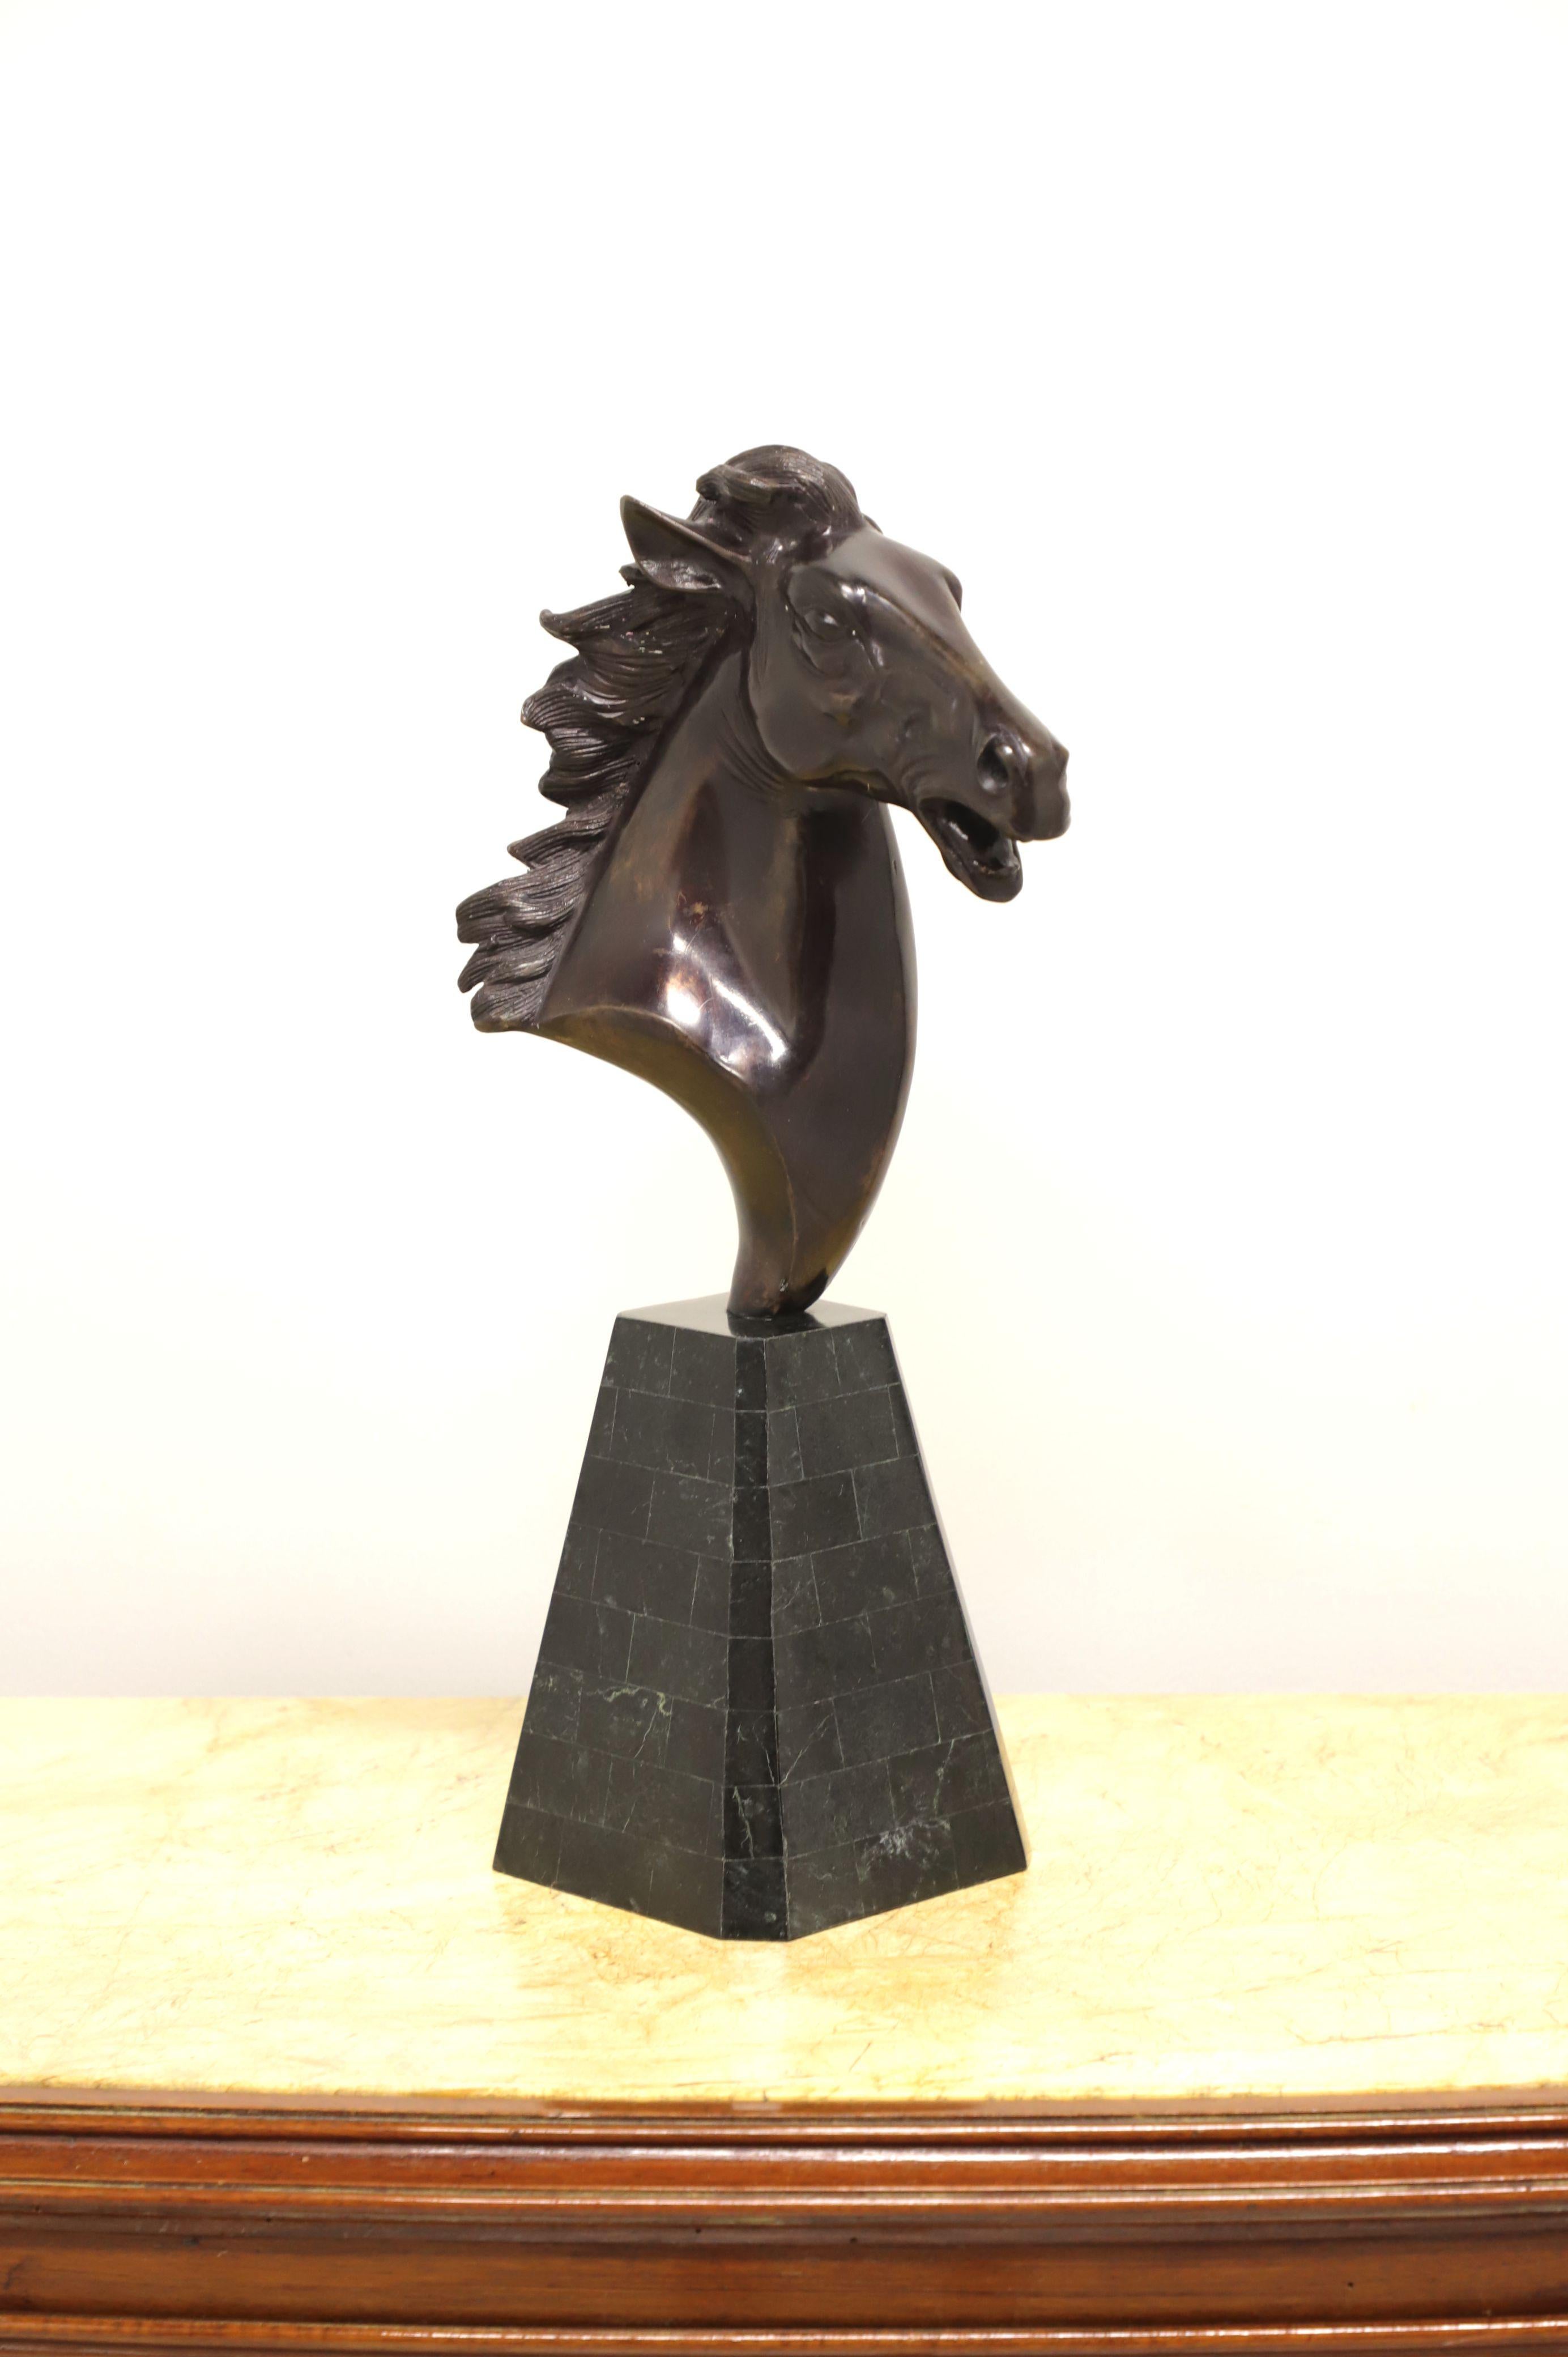 Sculpture de table en métal représentant une tête de cheval par Maitland Smith. Tête de cheval en métal sculpté sur un socle en marbre noir tessellé. Fabriqué aux Philippines, à la fin du 20e siècle.

Mesures : 6,25 L 6,25 P 20,5 H, pèse environ :